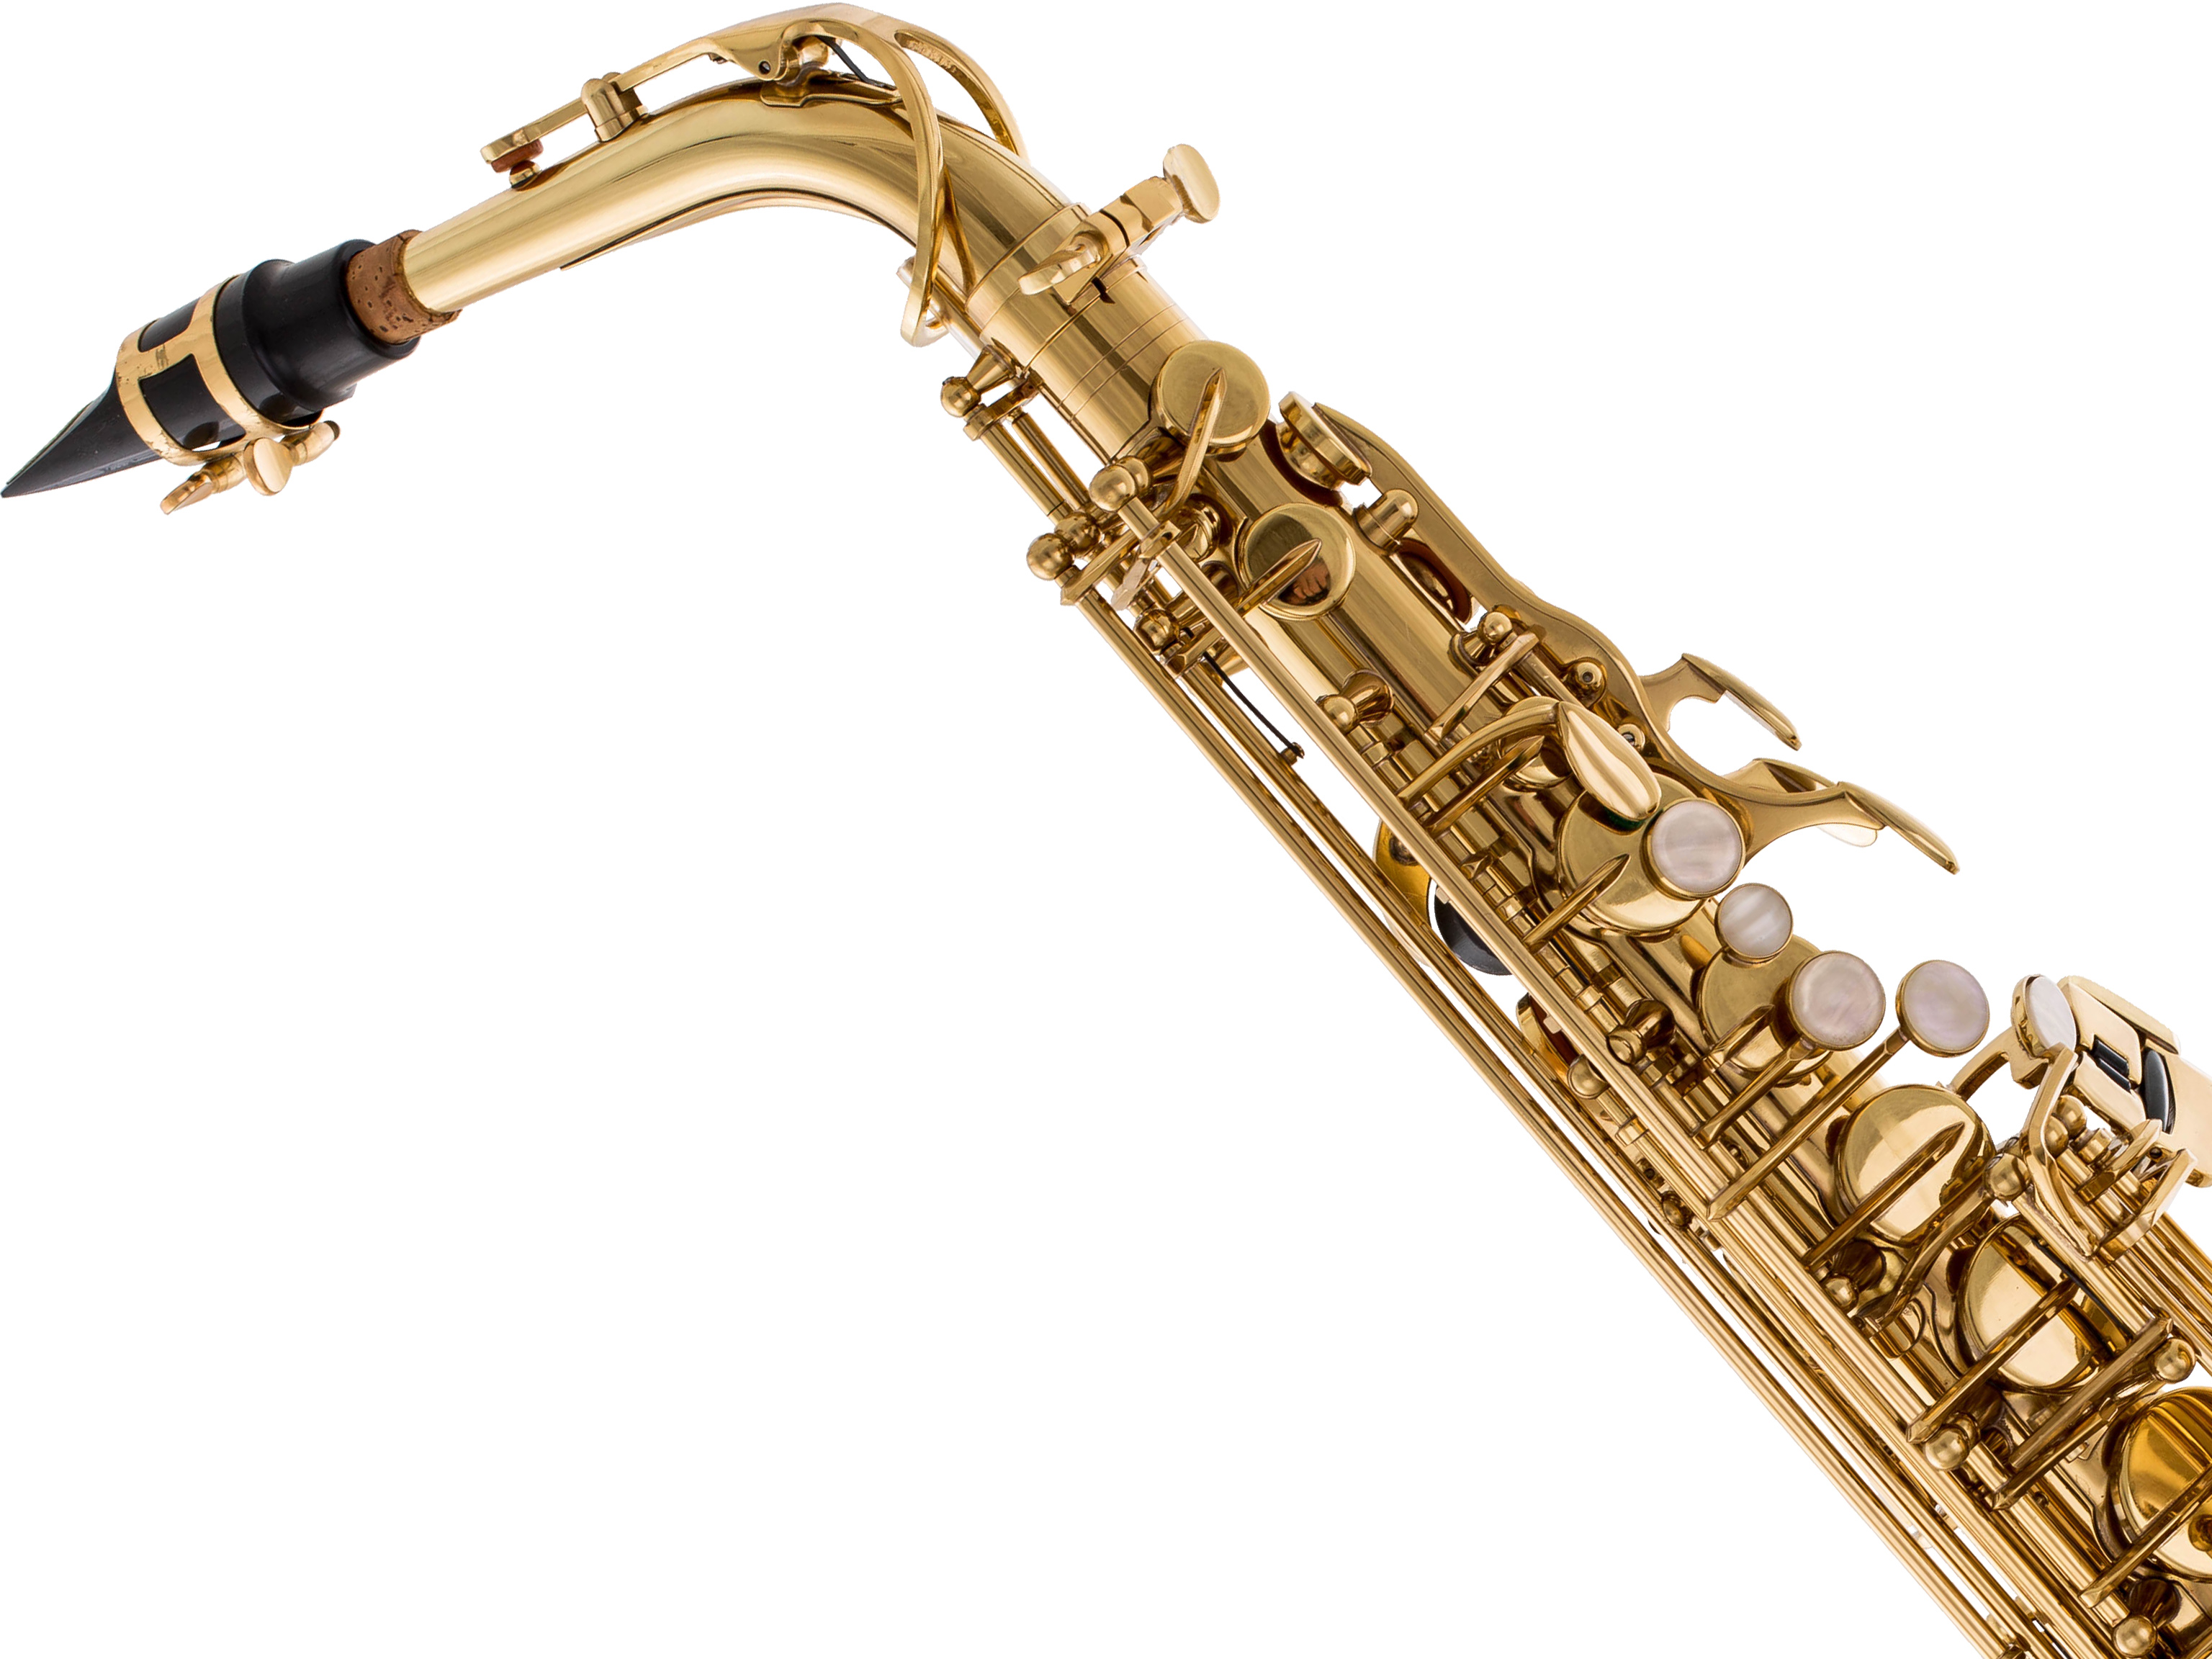 Keilwerth S.K.Y. Concert Altsaxophon